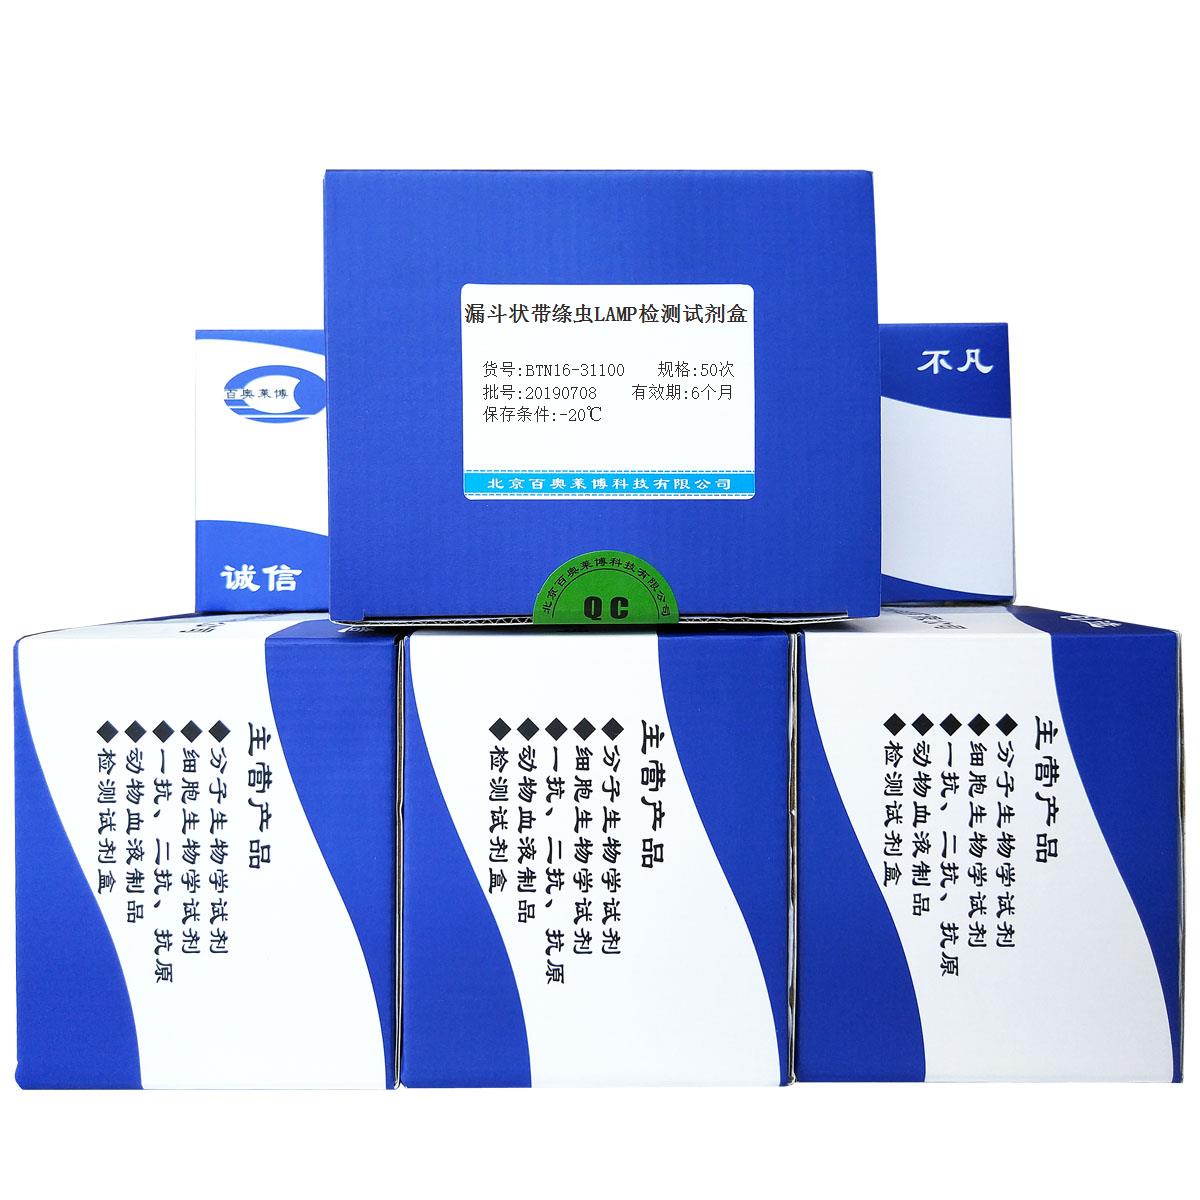 漏斗状带绦虫LAMP检测试剂盒北京品牌